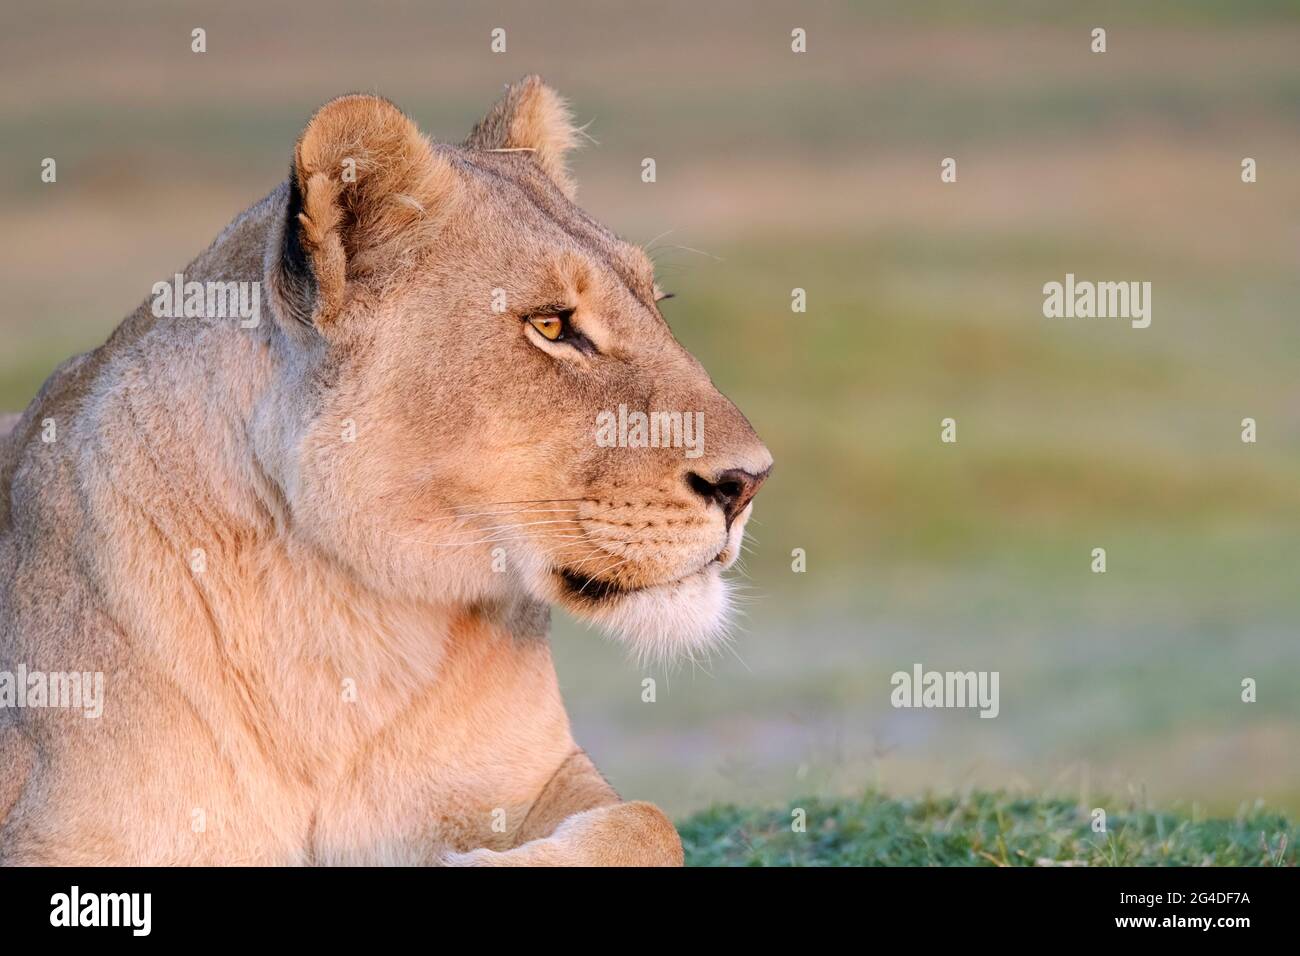 Löwin (Panthera leo) Augen Gesicht Kopf Seite Blick auf Profil Nahaufnahme. Unscharfer Hintergrund afrikanische Savanne. Okavango Delta, Botsuana, Afrika Stockfoto